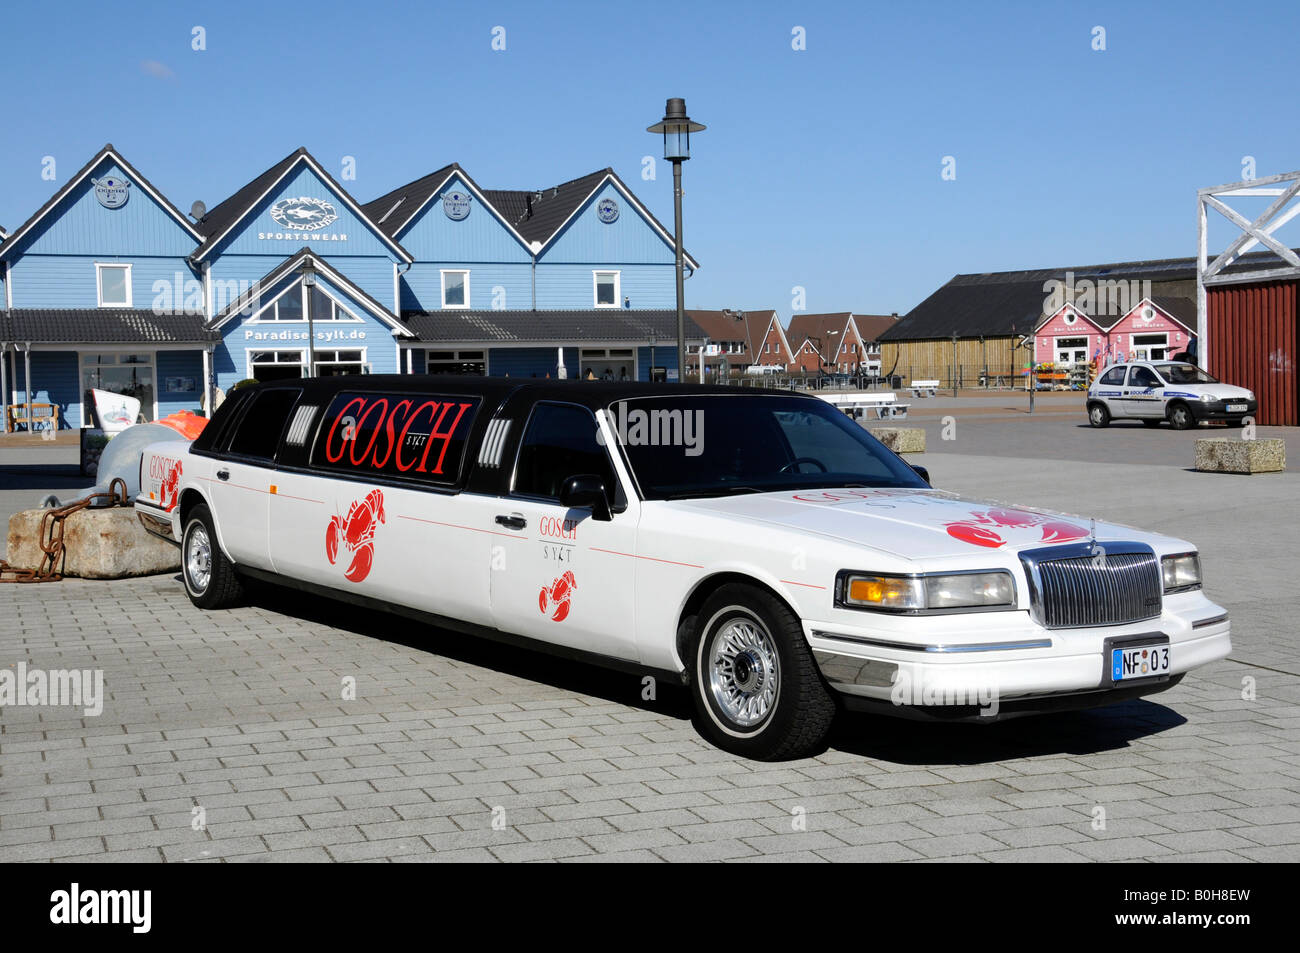 Limousine Bianca della società Gosch utilizzata per eventi, dipinte con il loro nome e il red lobster logo, isola di Sylt, Nord Frisone Foto Stock